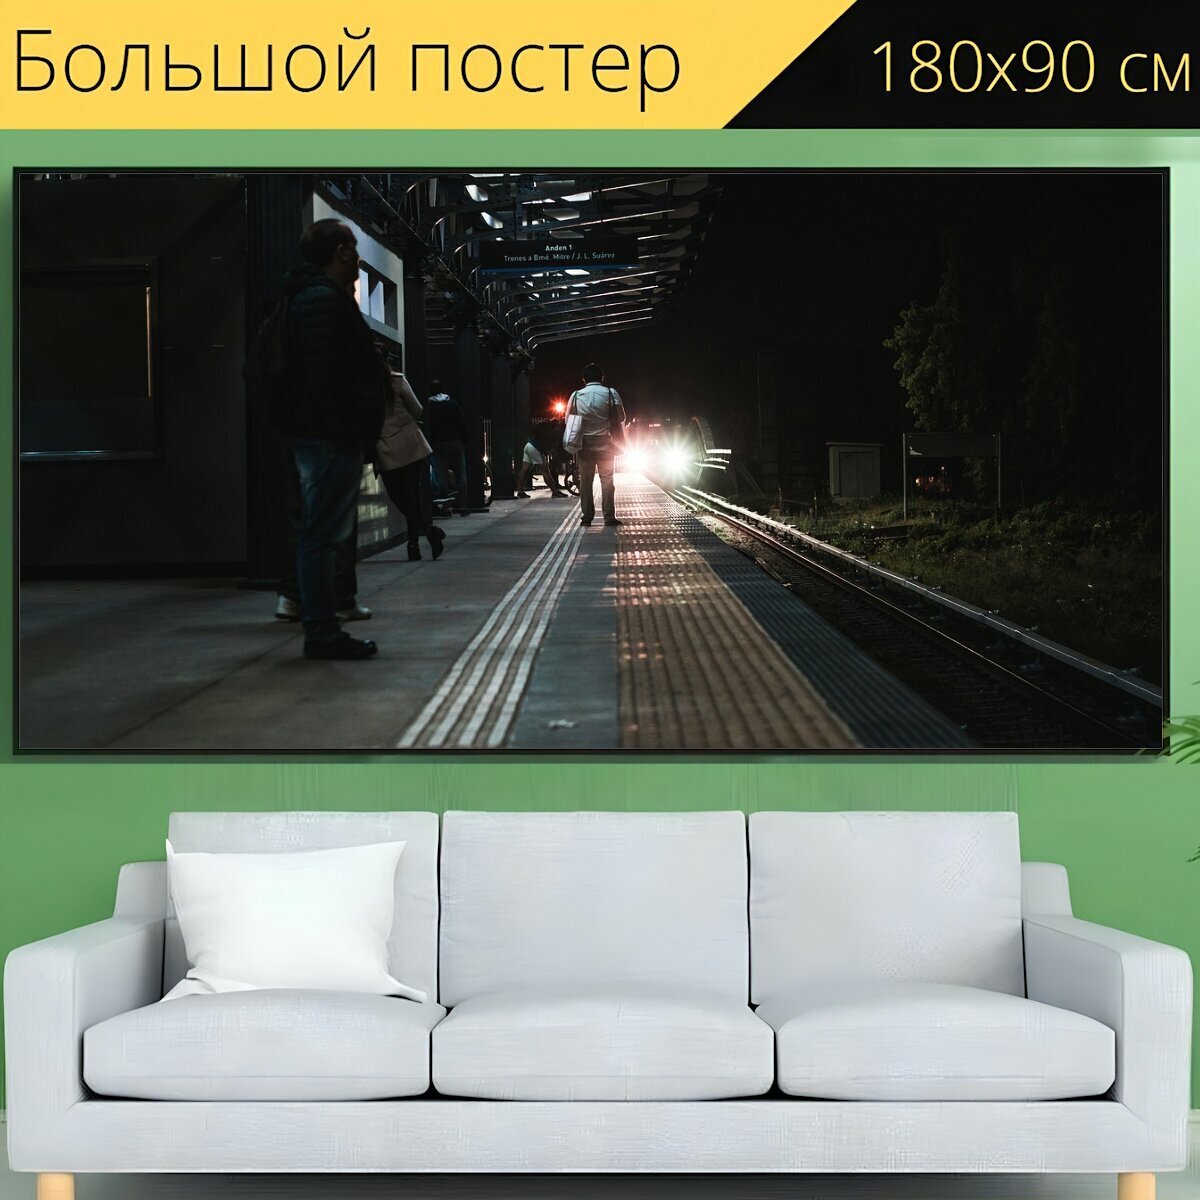 Большой постер "Поезд, станция, метро" 180 x 90 см. для интерьера